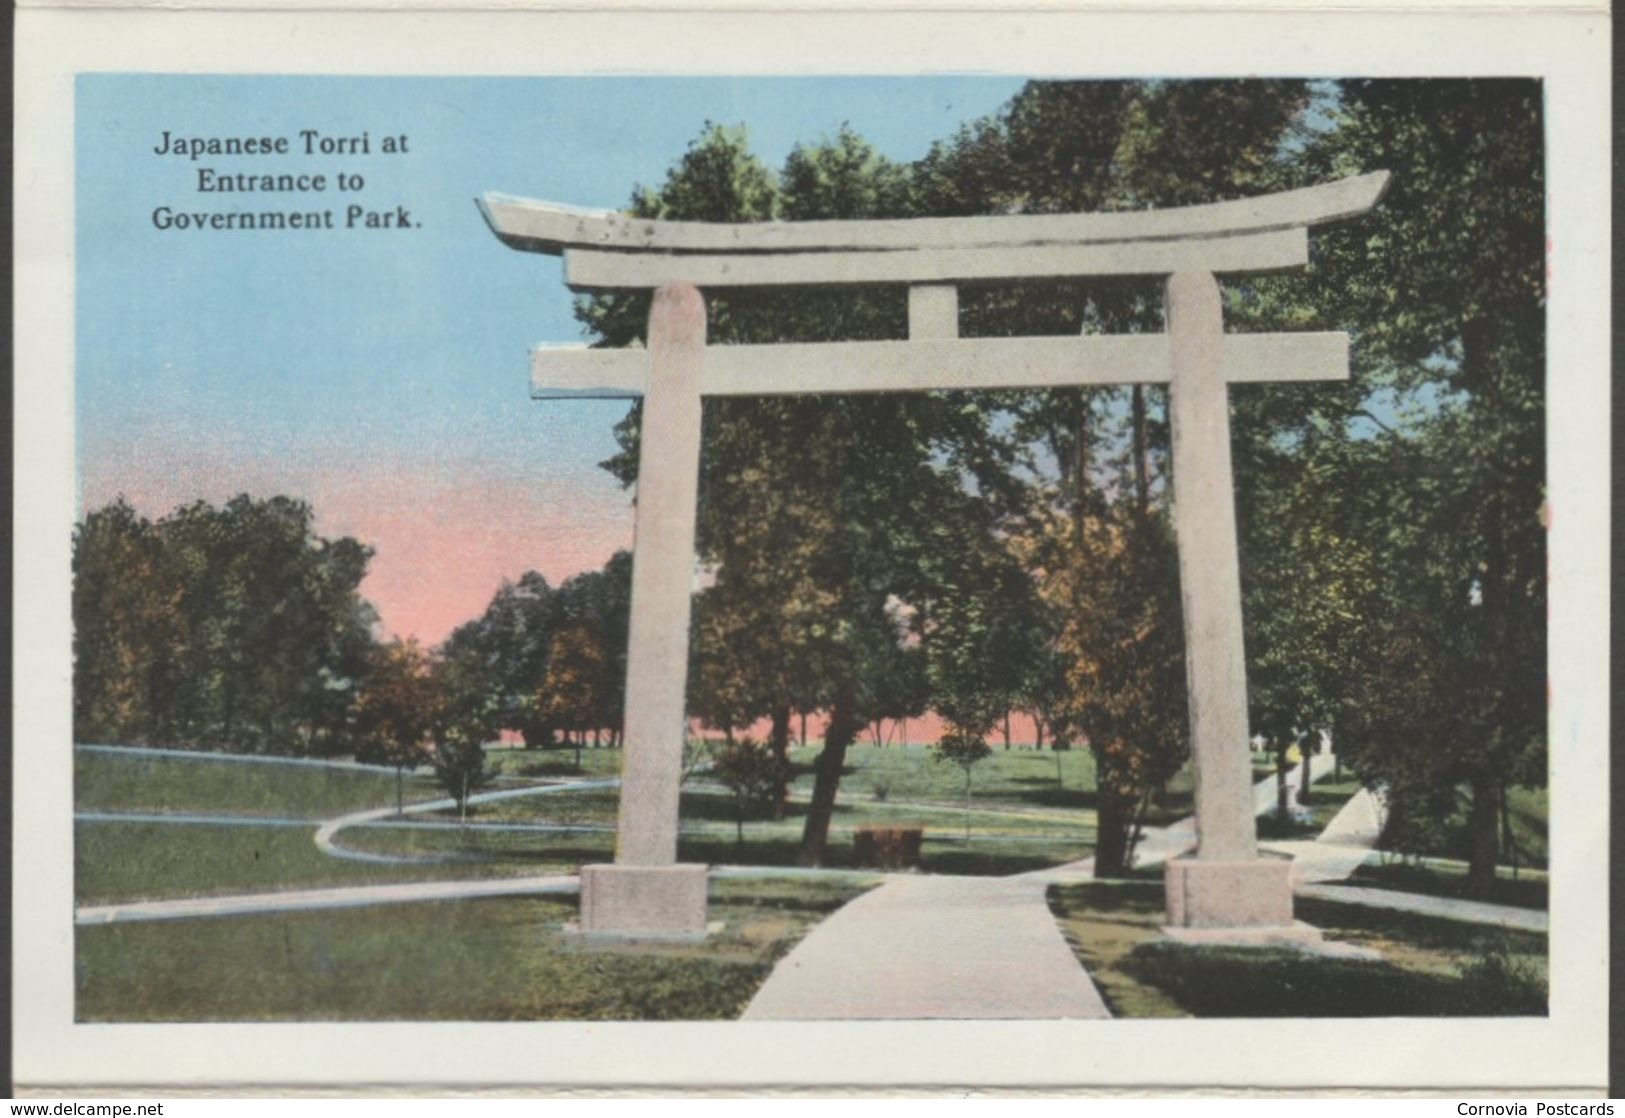 20 Souvenir Views of Sault Ste Marie, Michigan, 1916 - Postcard Views